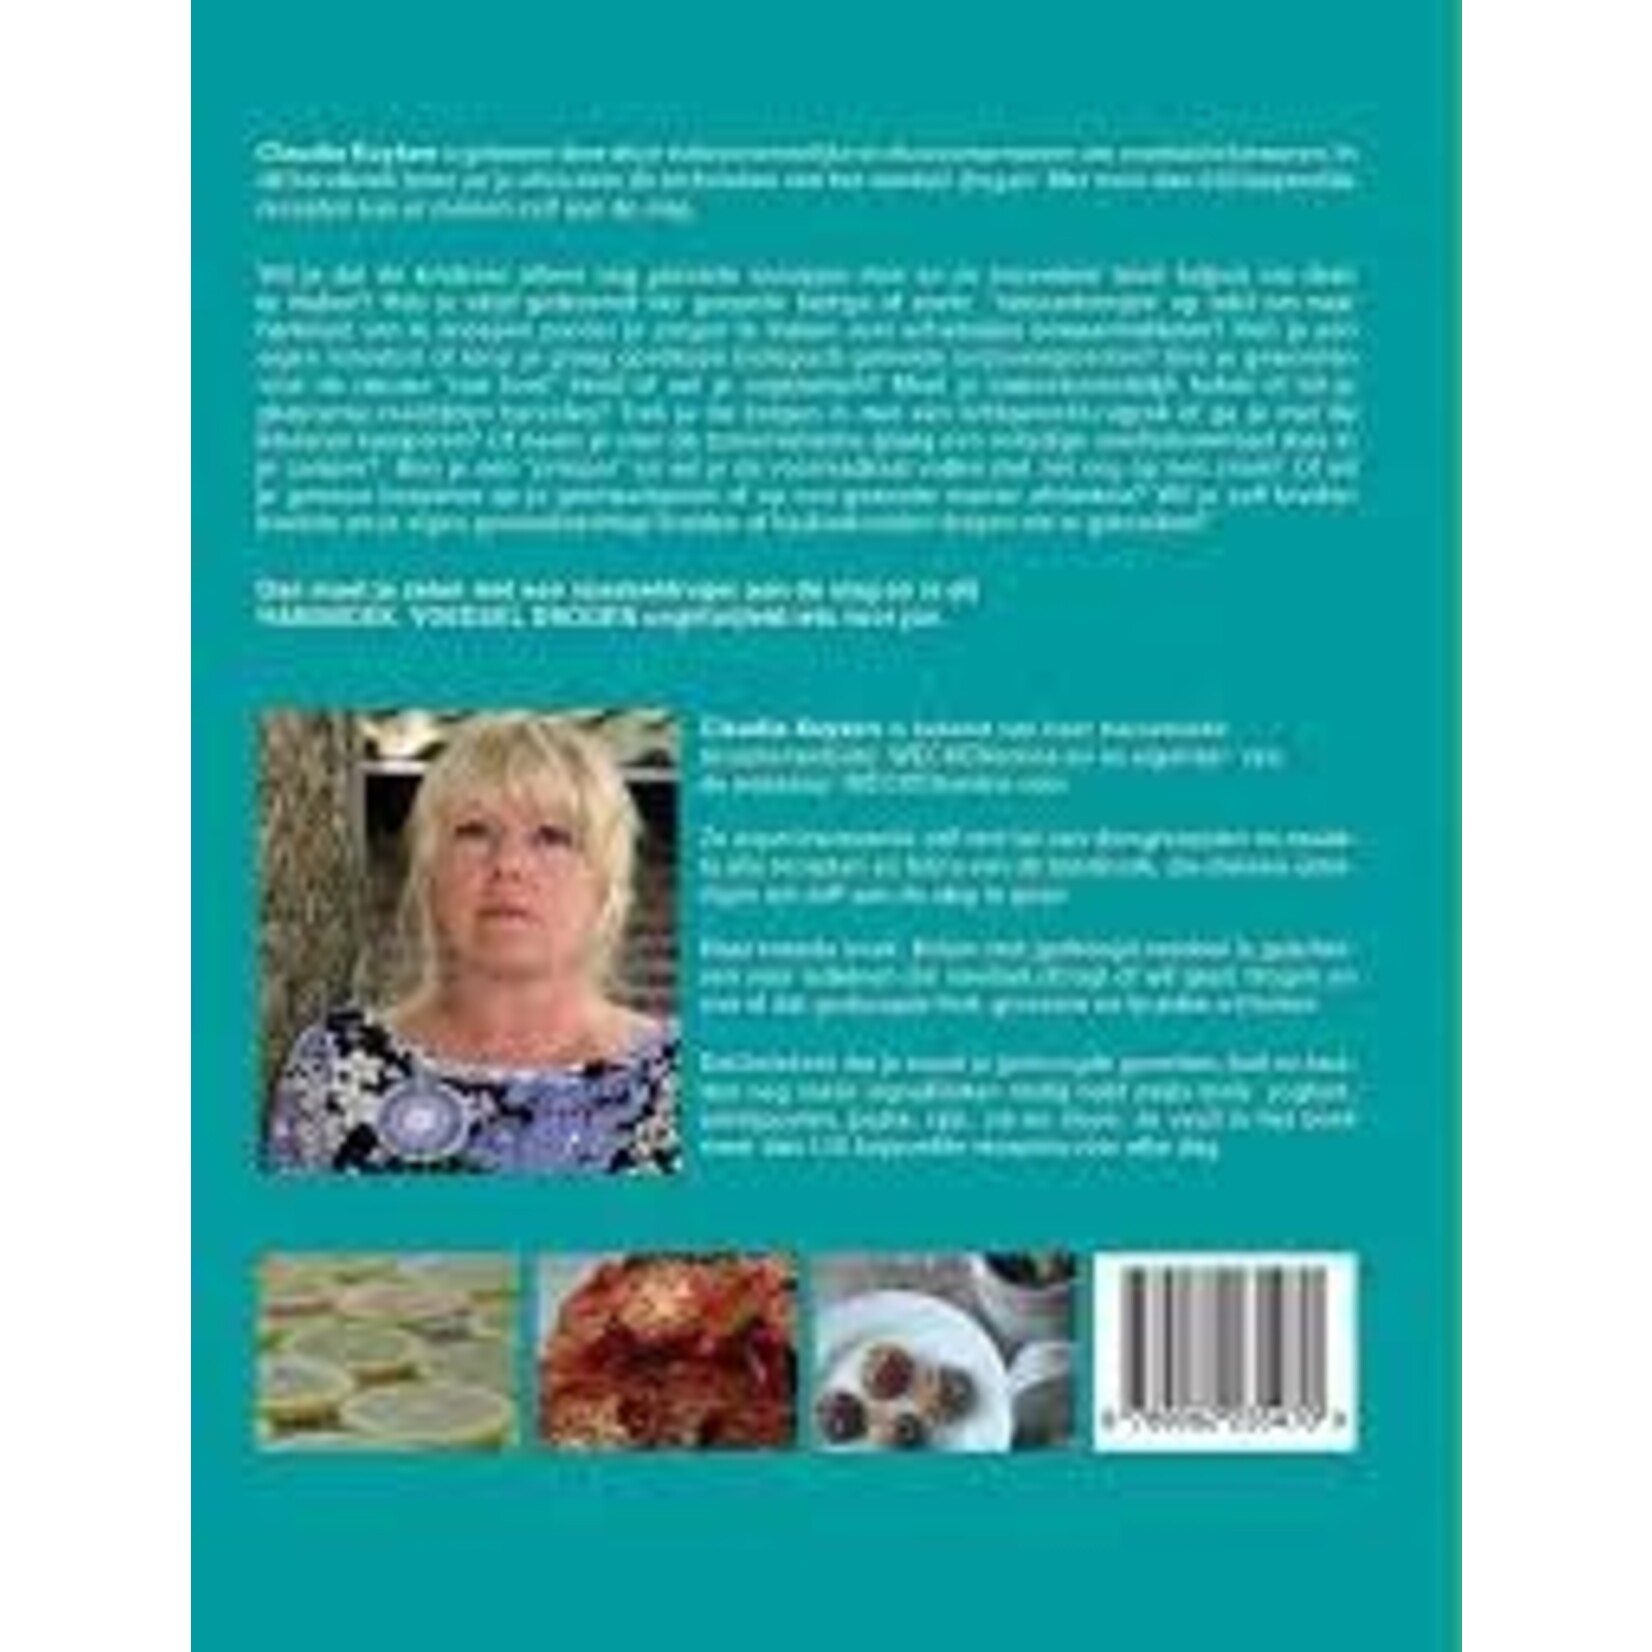 Espressions Claudia Kuyken, handboek voedsel drogen ISBN 9789082235470